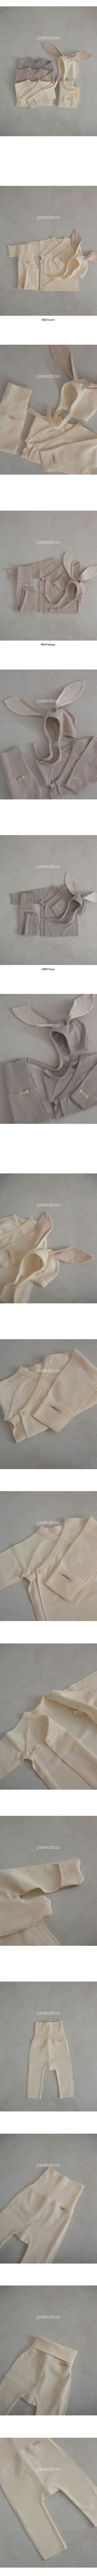 Peekaboo - Korean Baby Fashion - #onlinebabyboutique - Barnie Benet Bodysuit Set 3m Newborn - 2